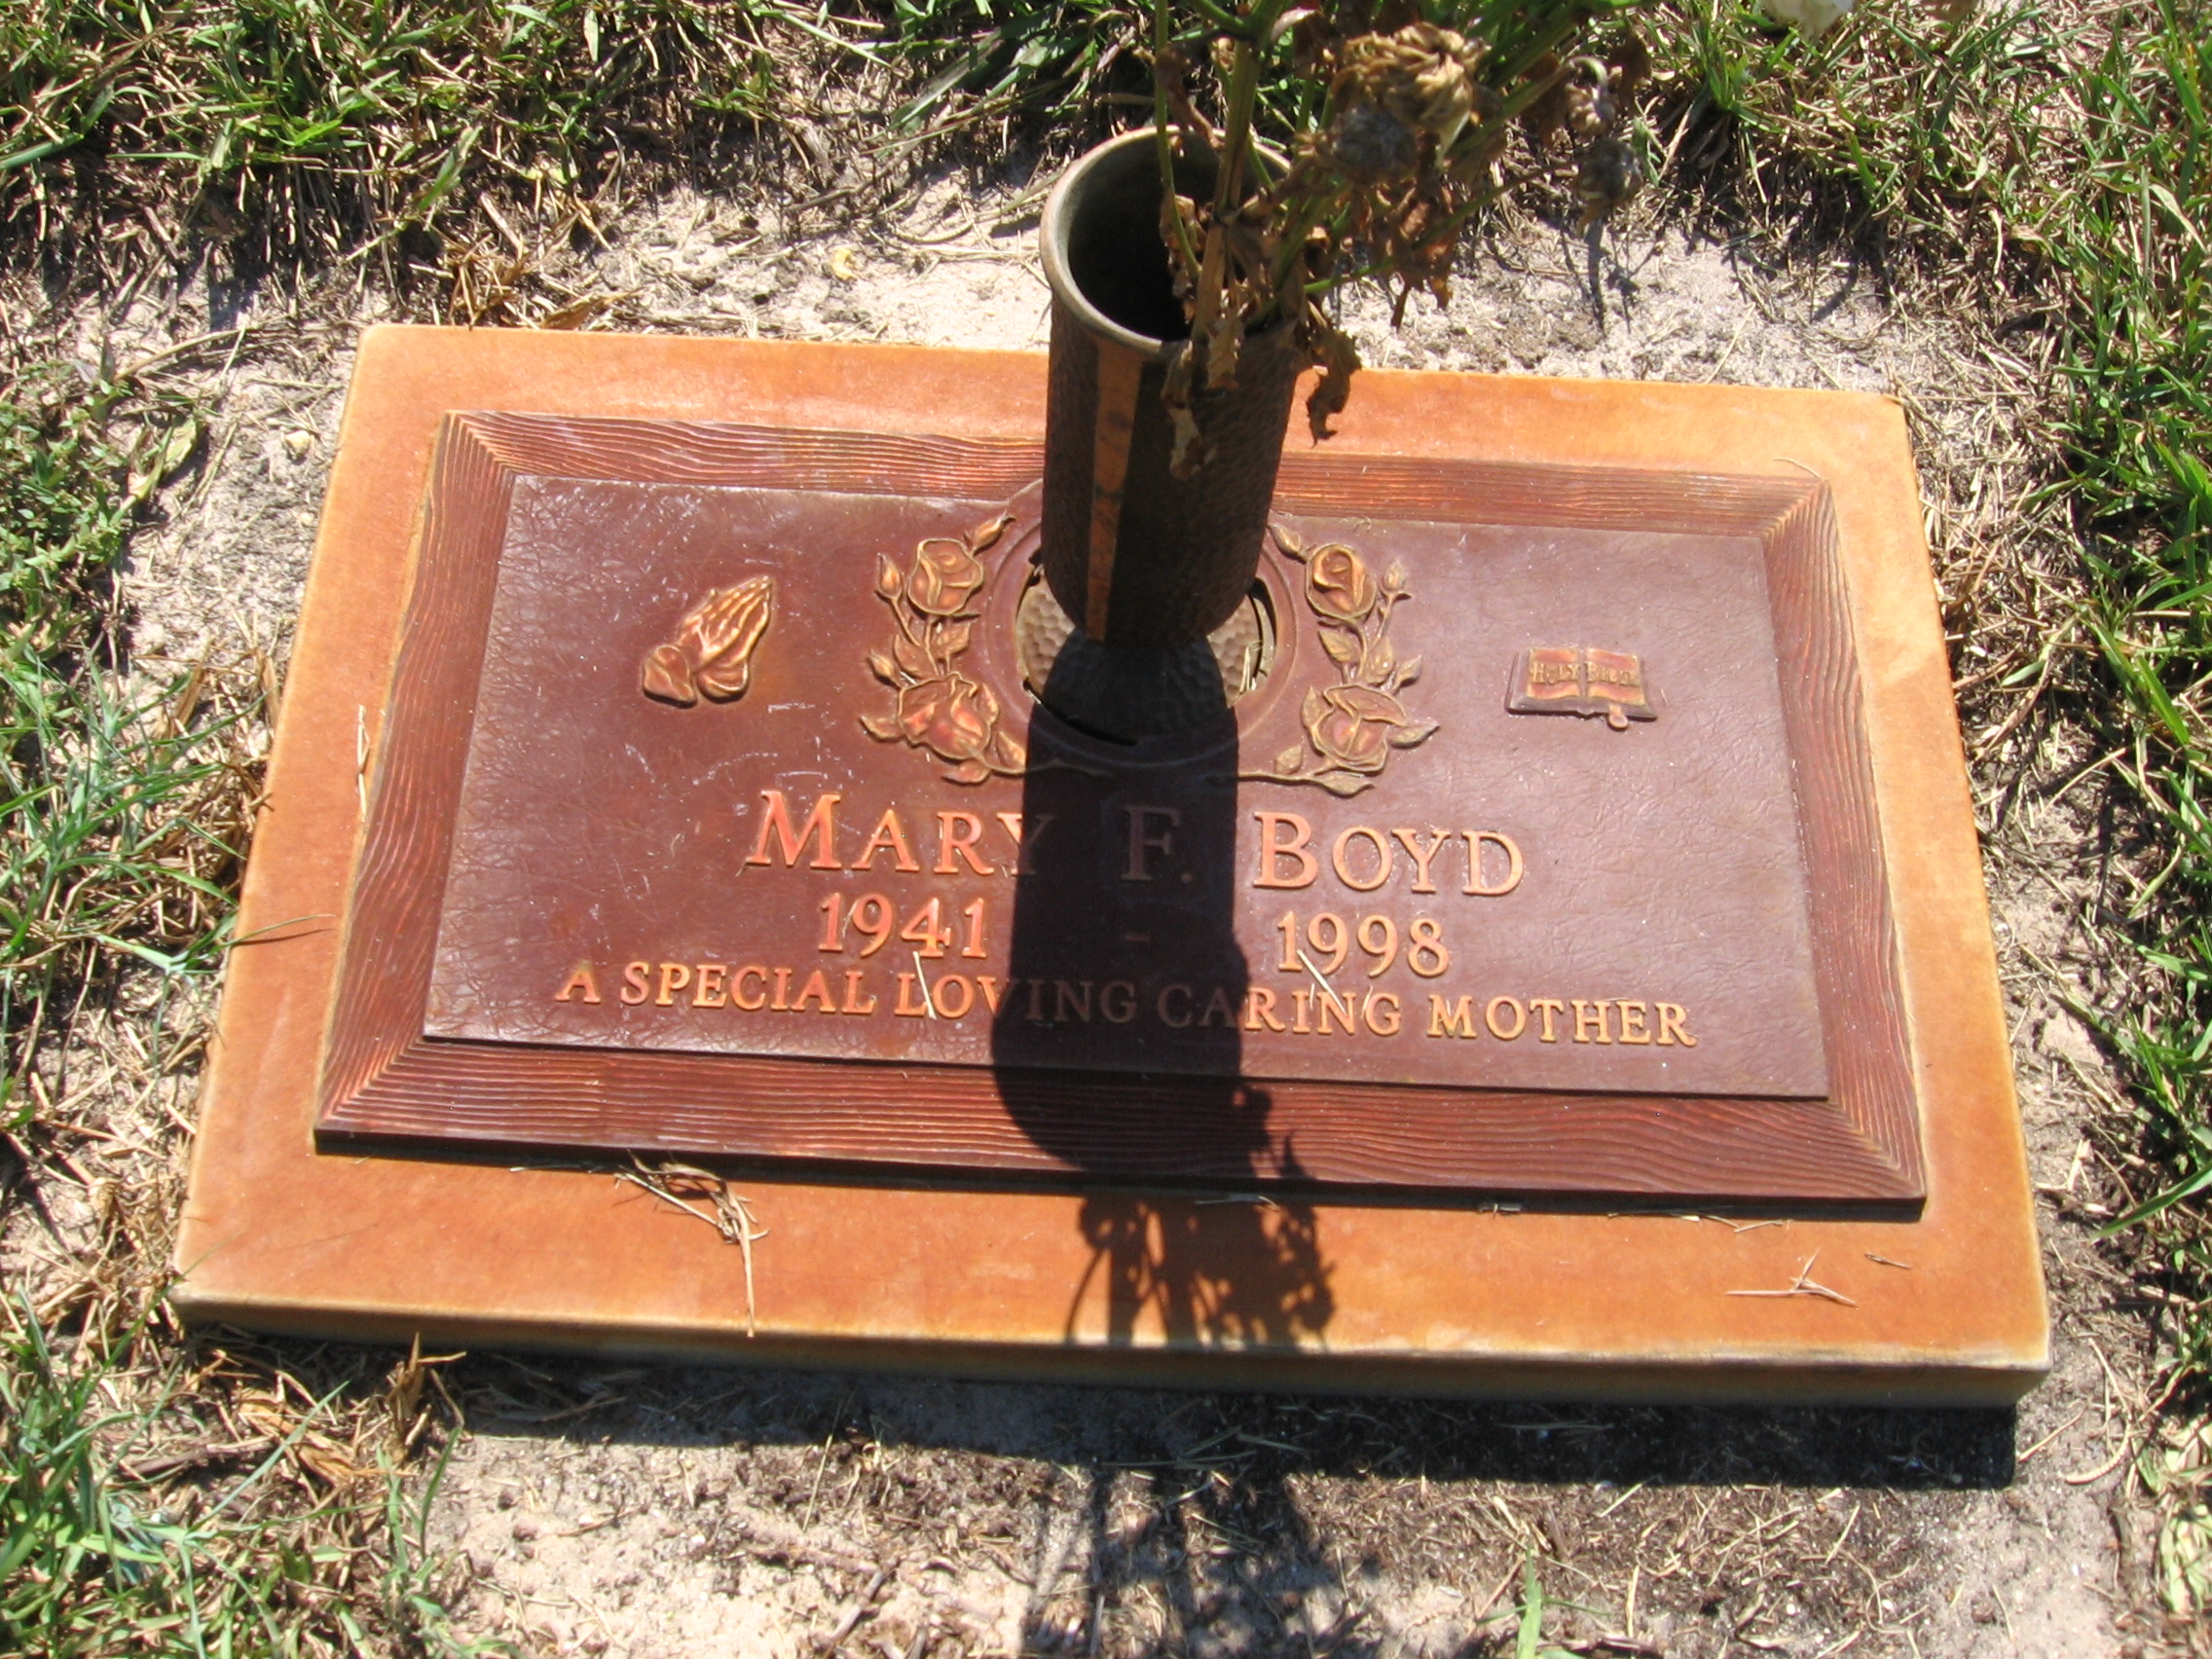 Mary F Boyd